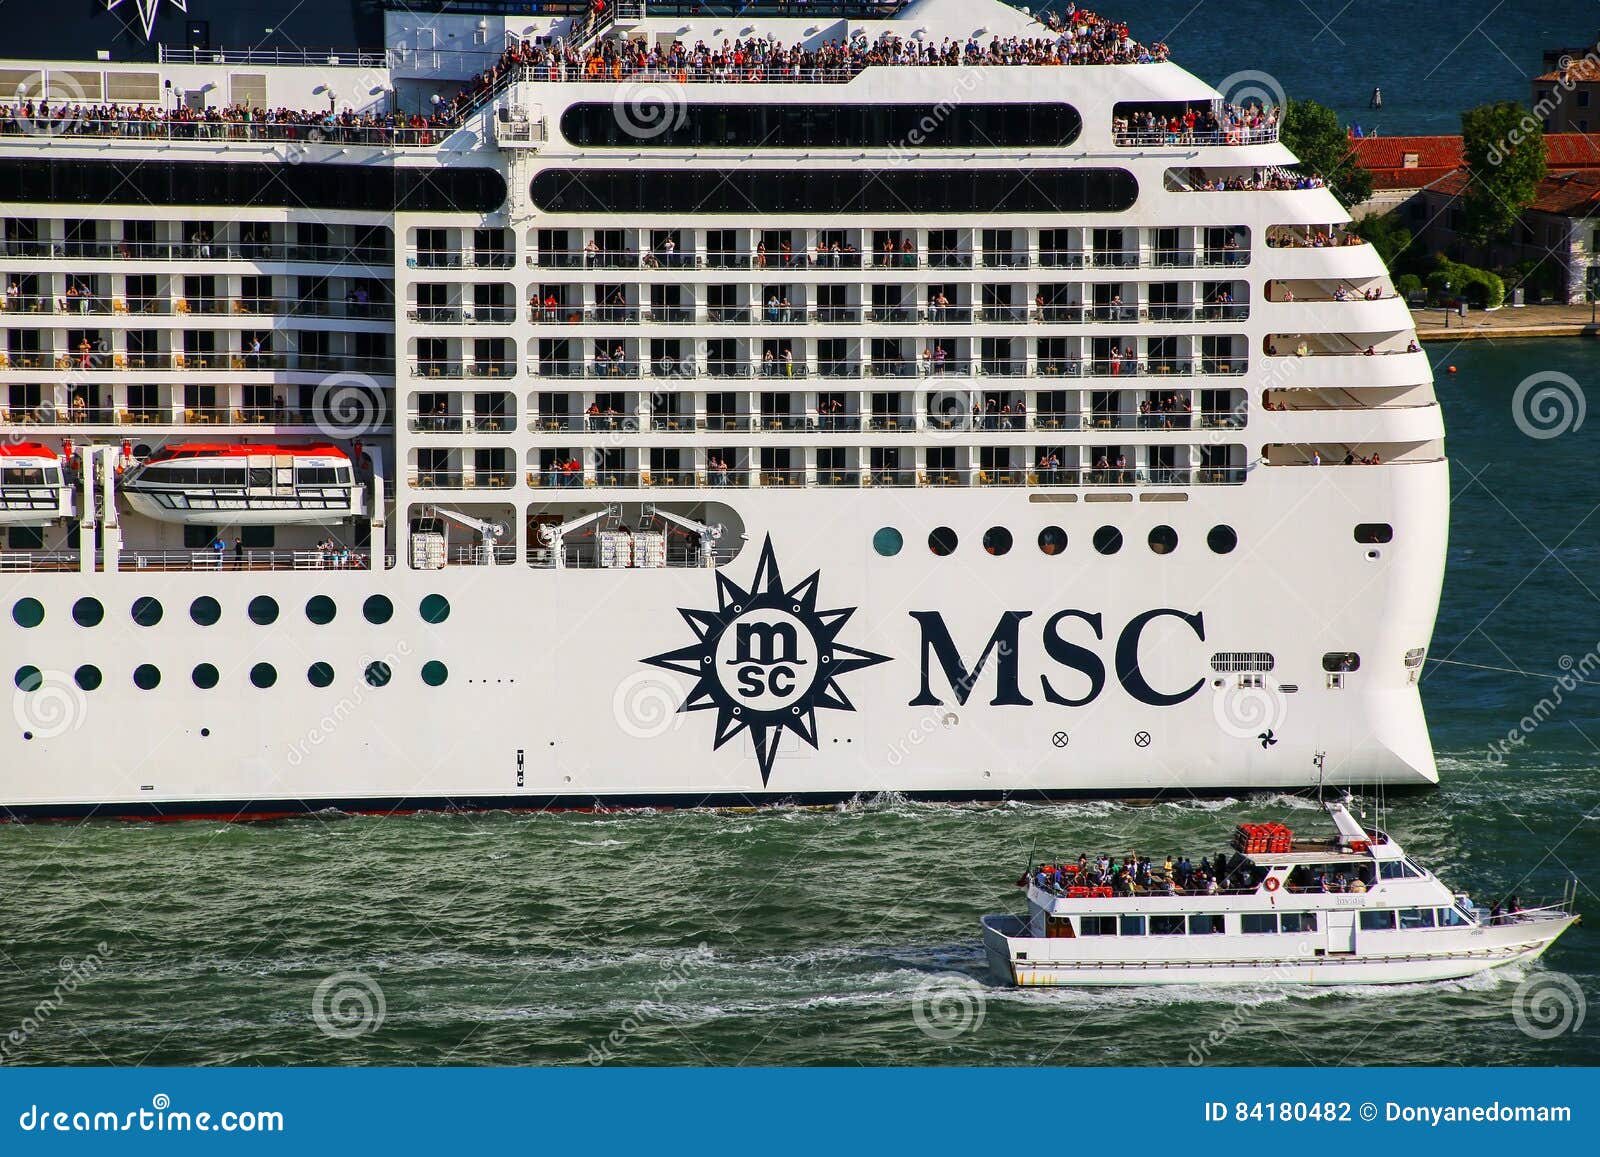 cruise ship venice marco